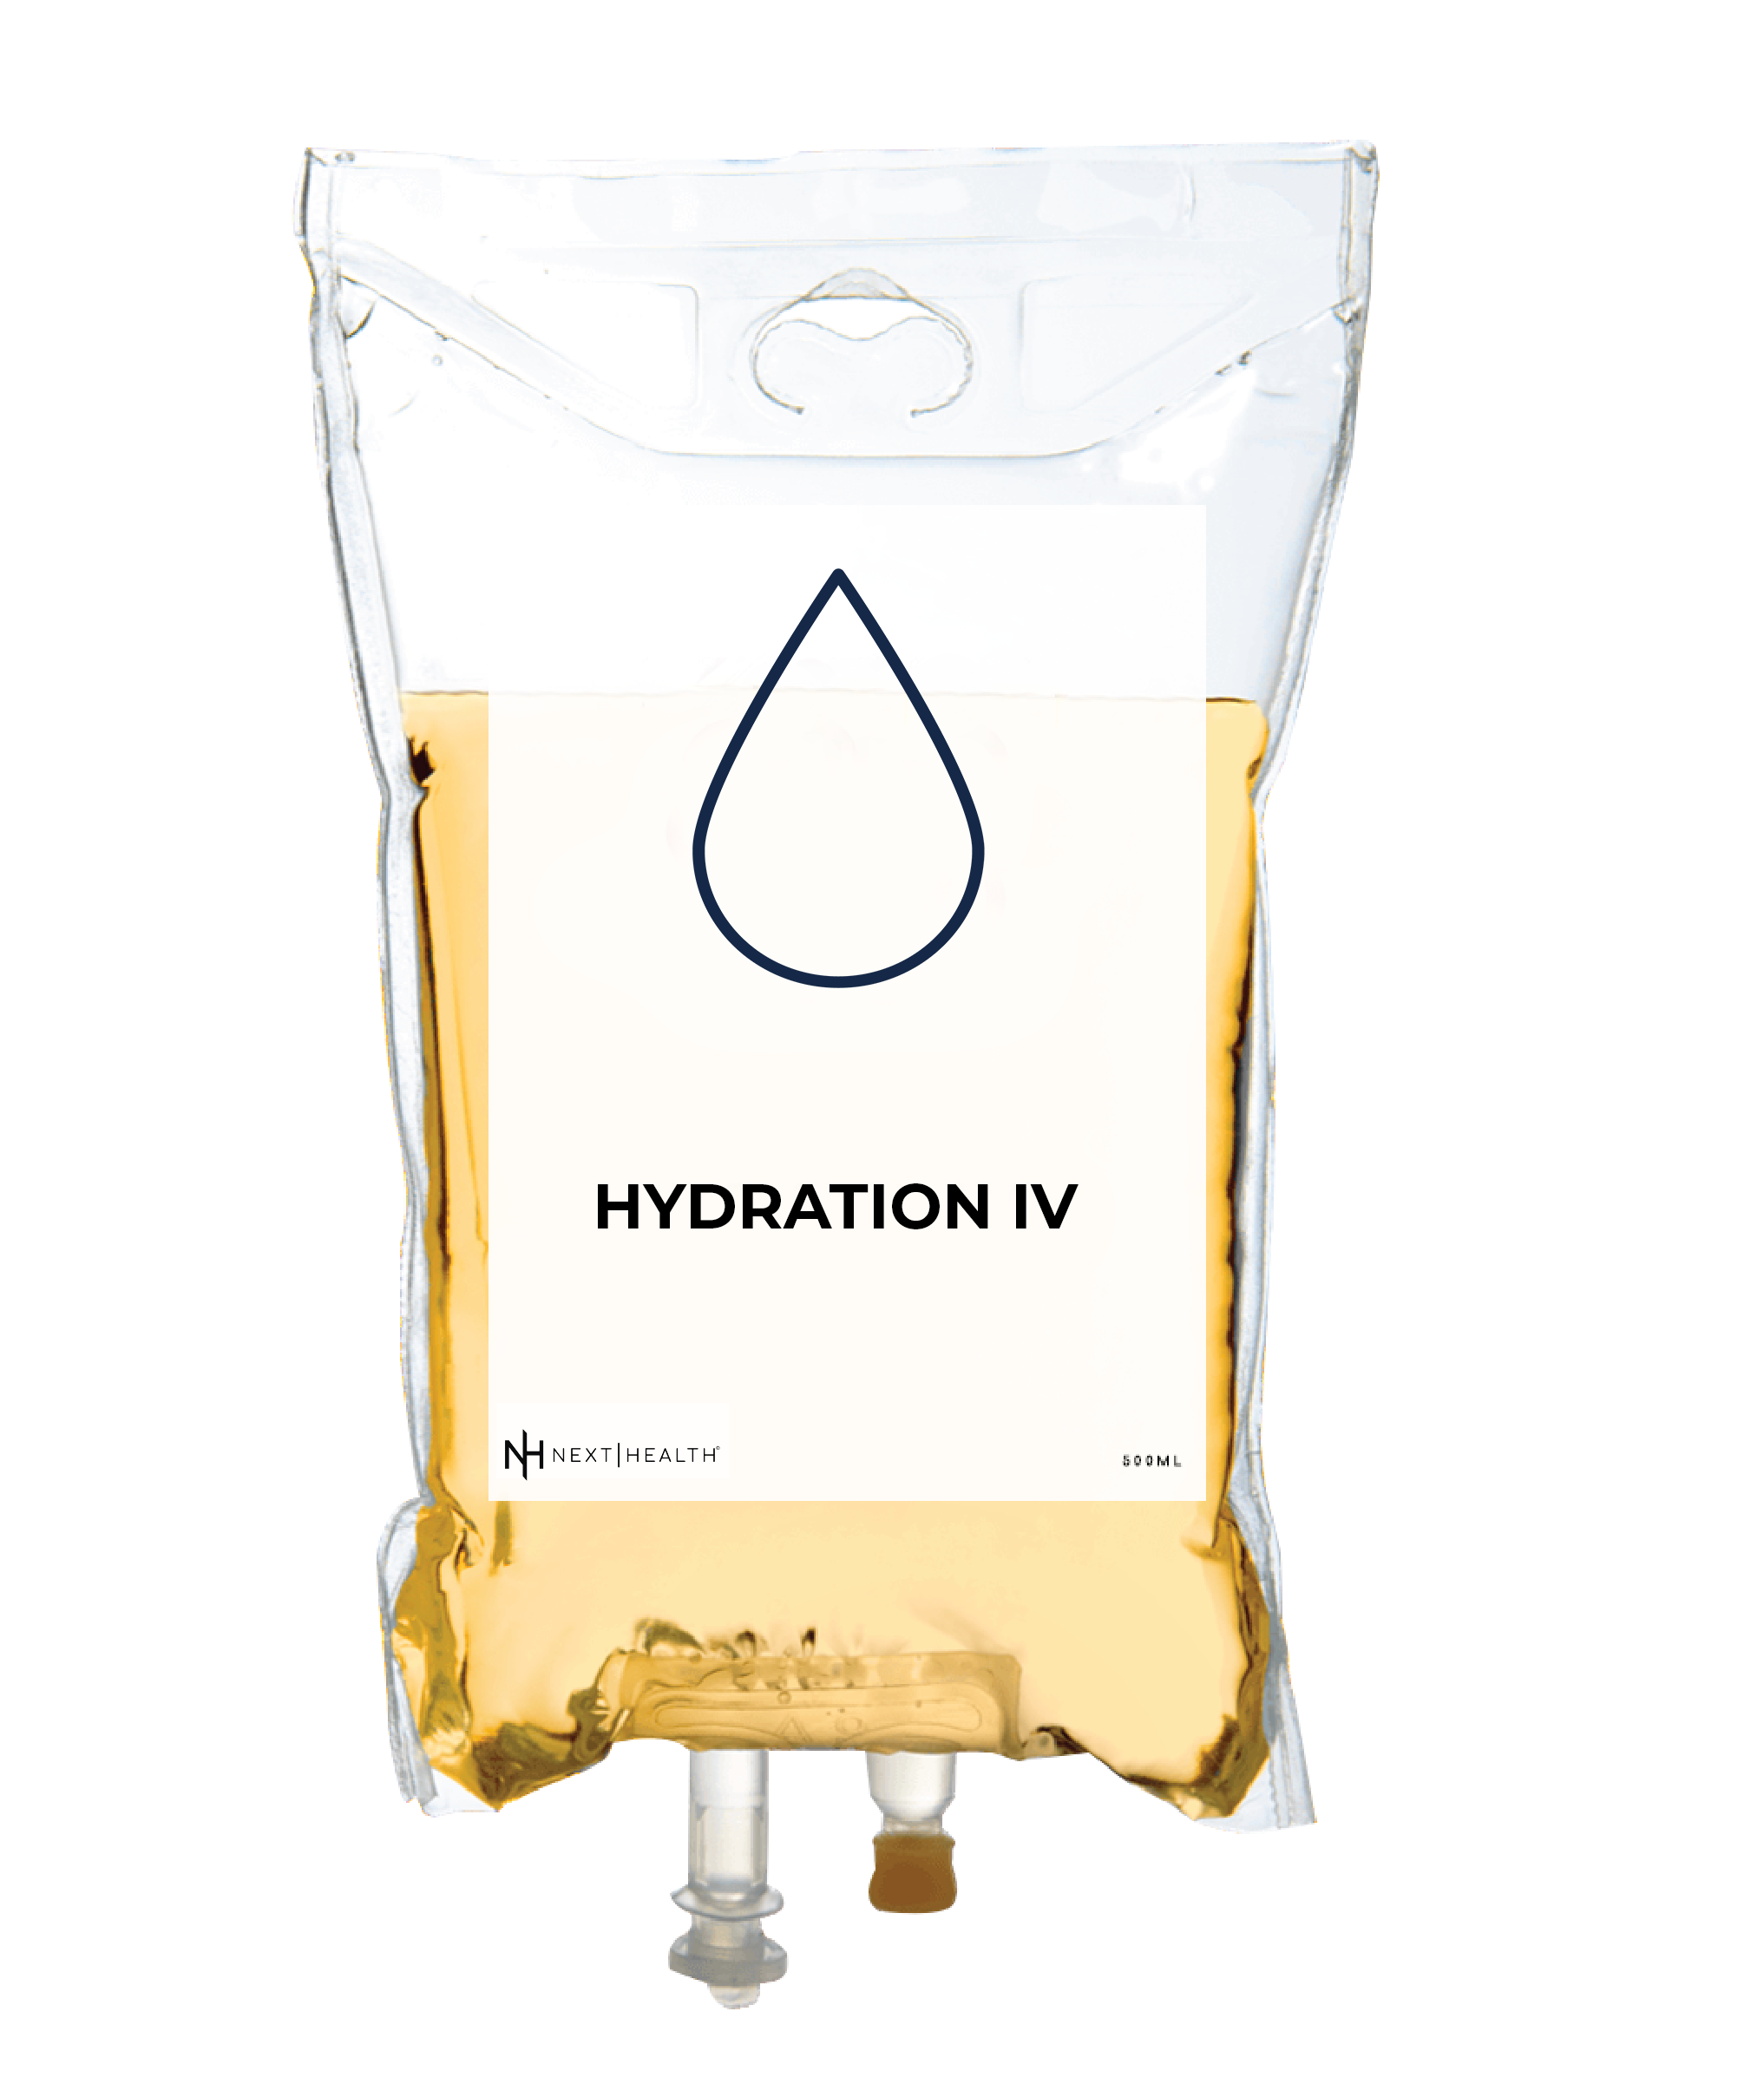 Hydration IV